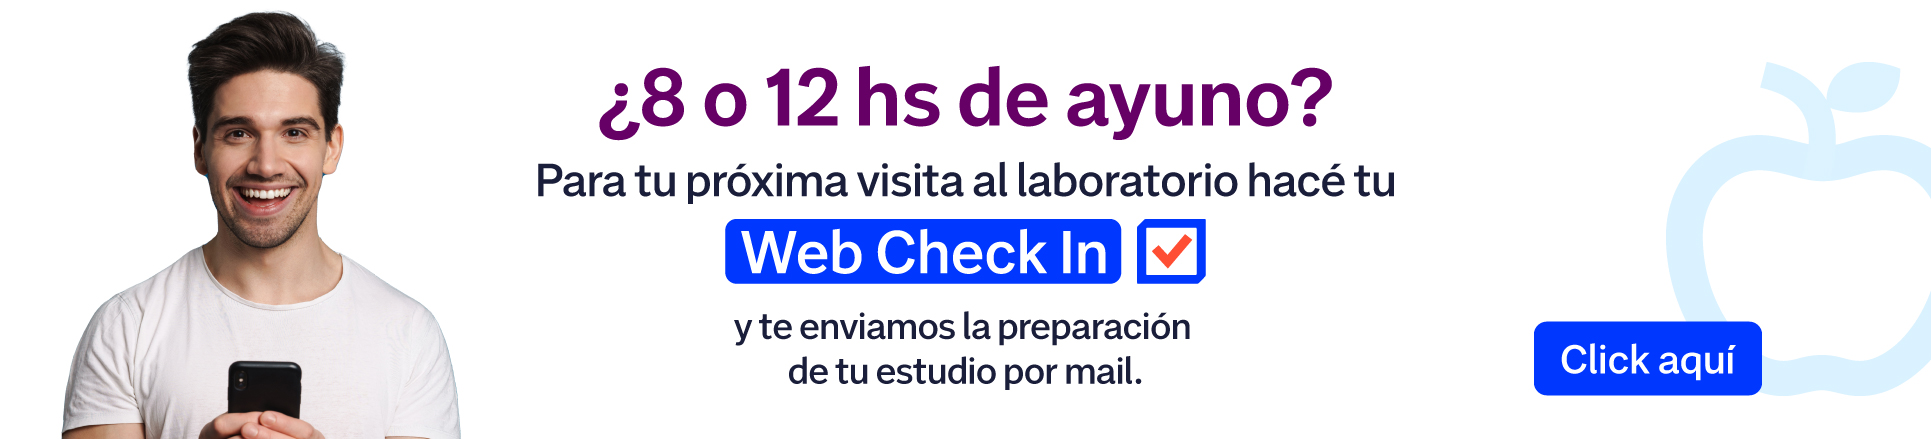 Web check in